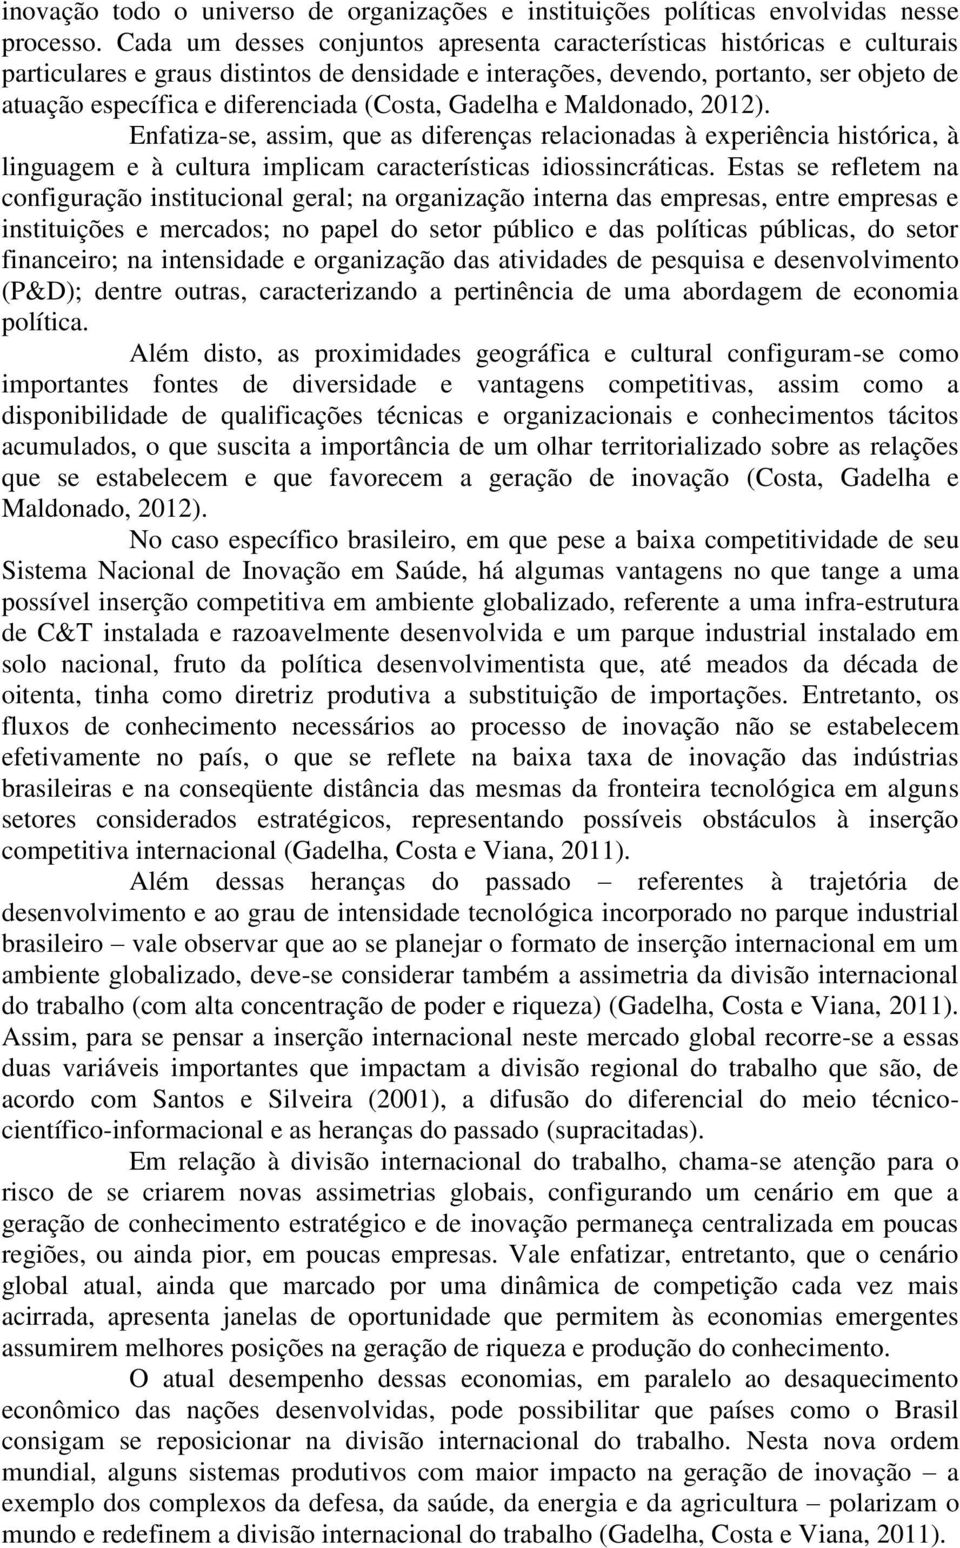 (Costa, Gadelha e Maldonado, 2012). Enfatiza-se, assim, que as diferenças relacionadas à experiência histórica, à linguagem e à cultura implicam características idiossincráticas.